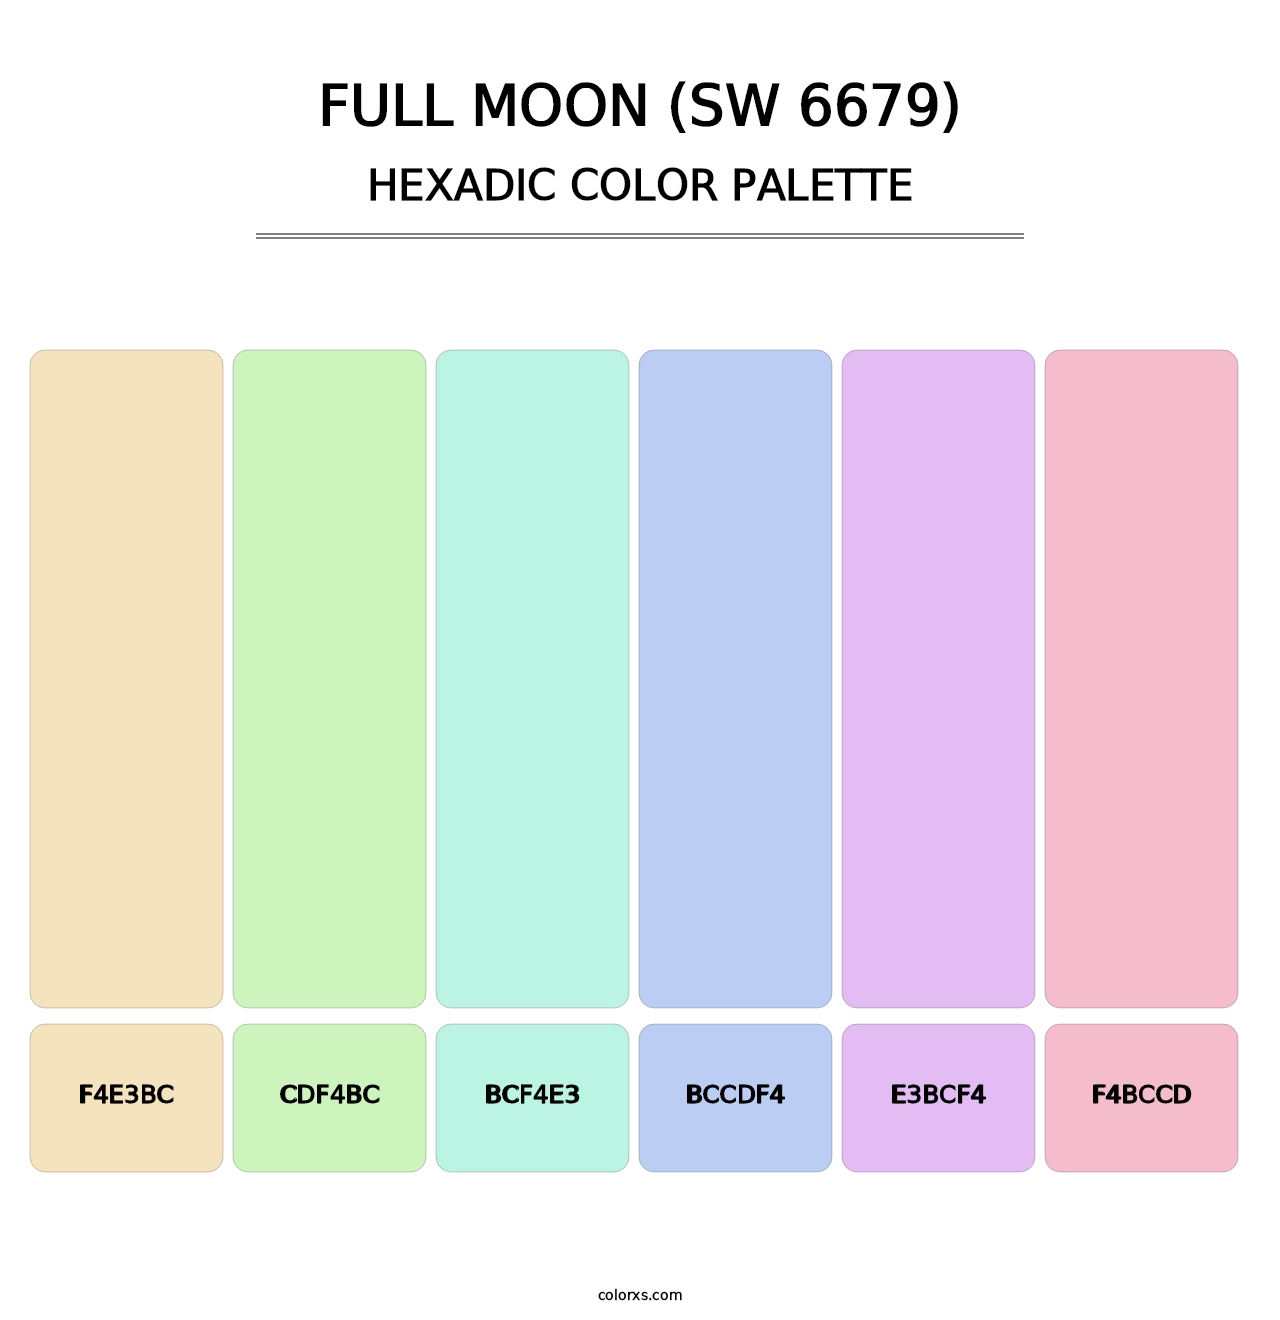 Full Moon (SW 6679) - Hexadic Color Palette